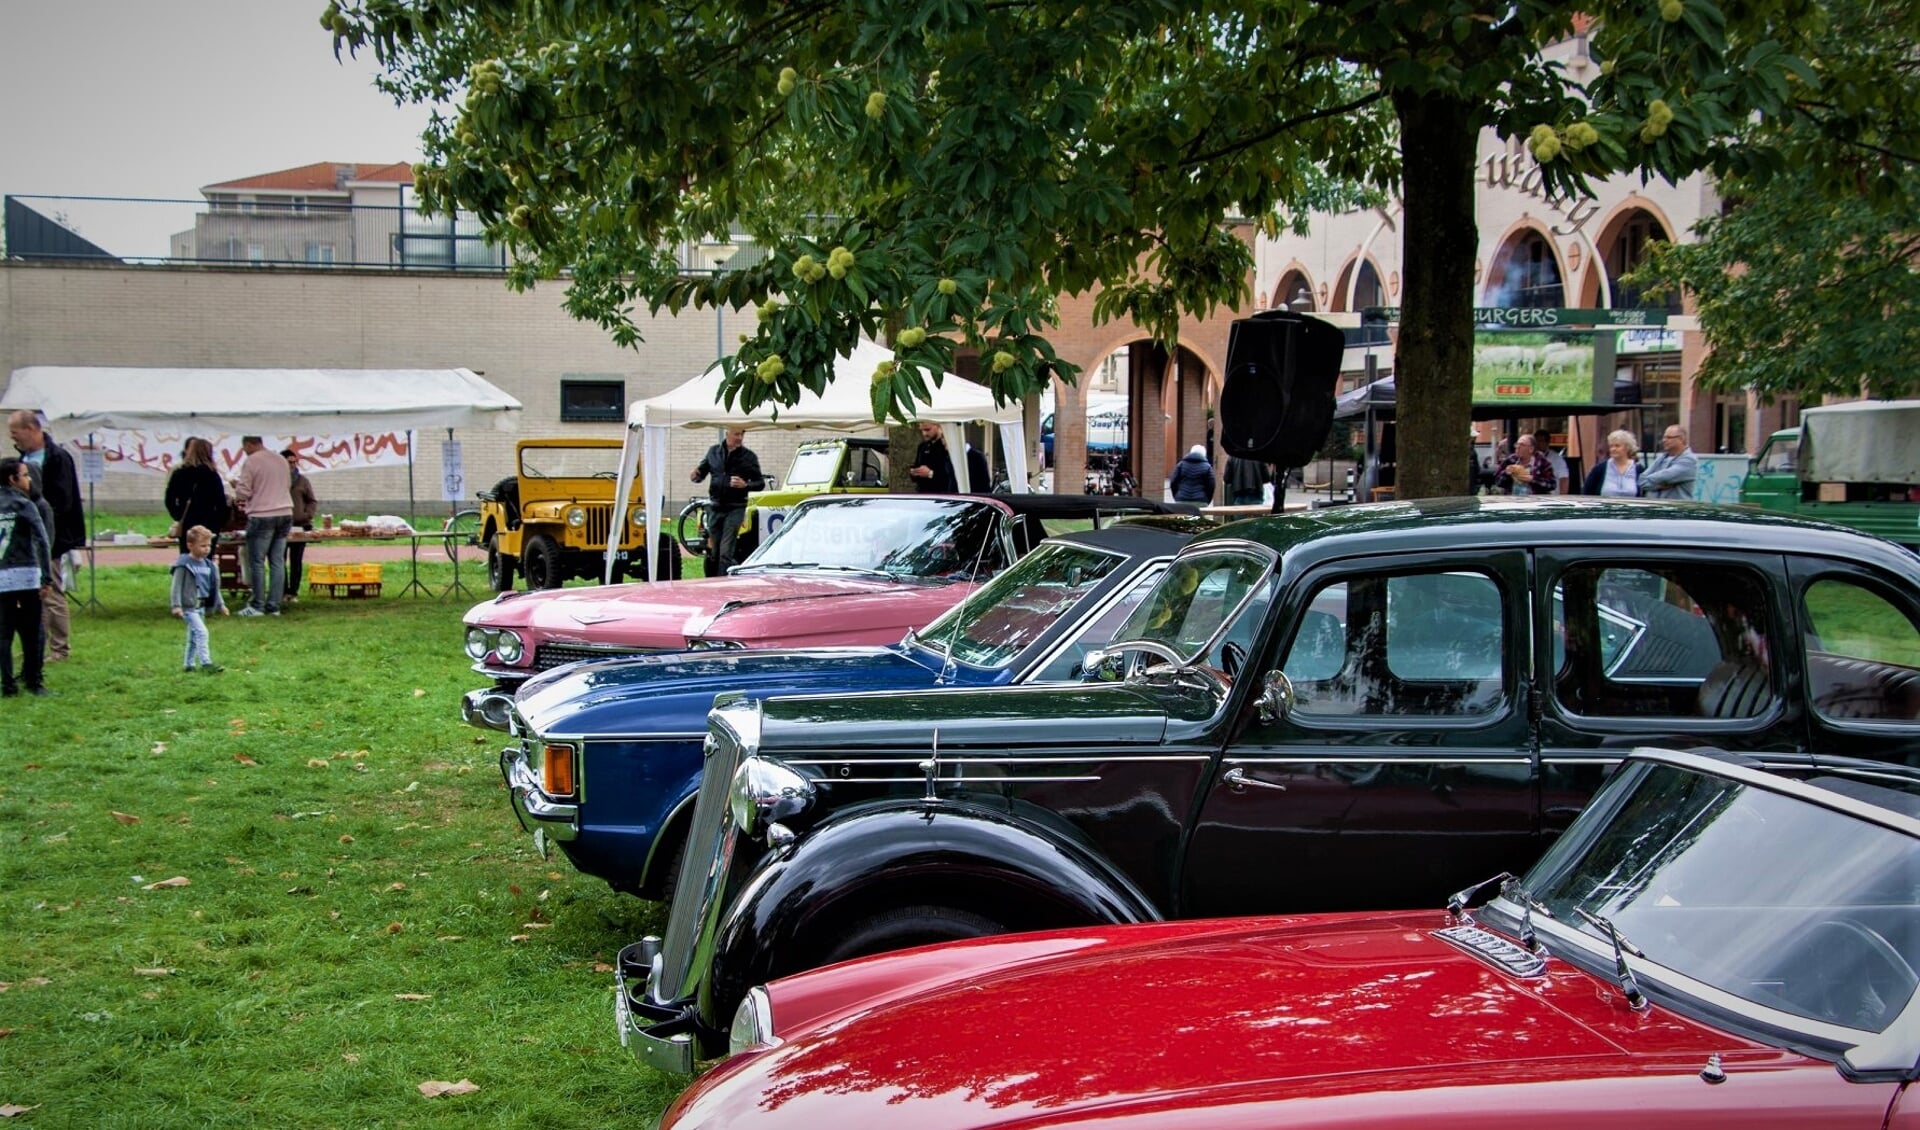 De Passewaaij Classic Day is een kleinschalig auto-evenement naast winkelcentrum Passewaaij in Tiel.